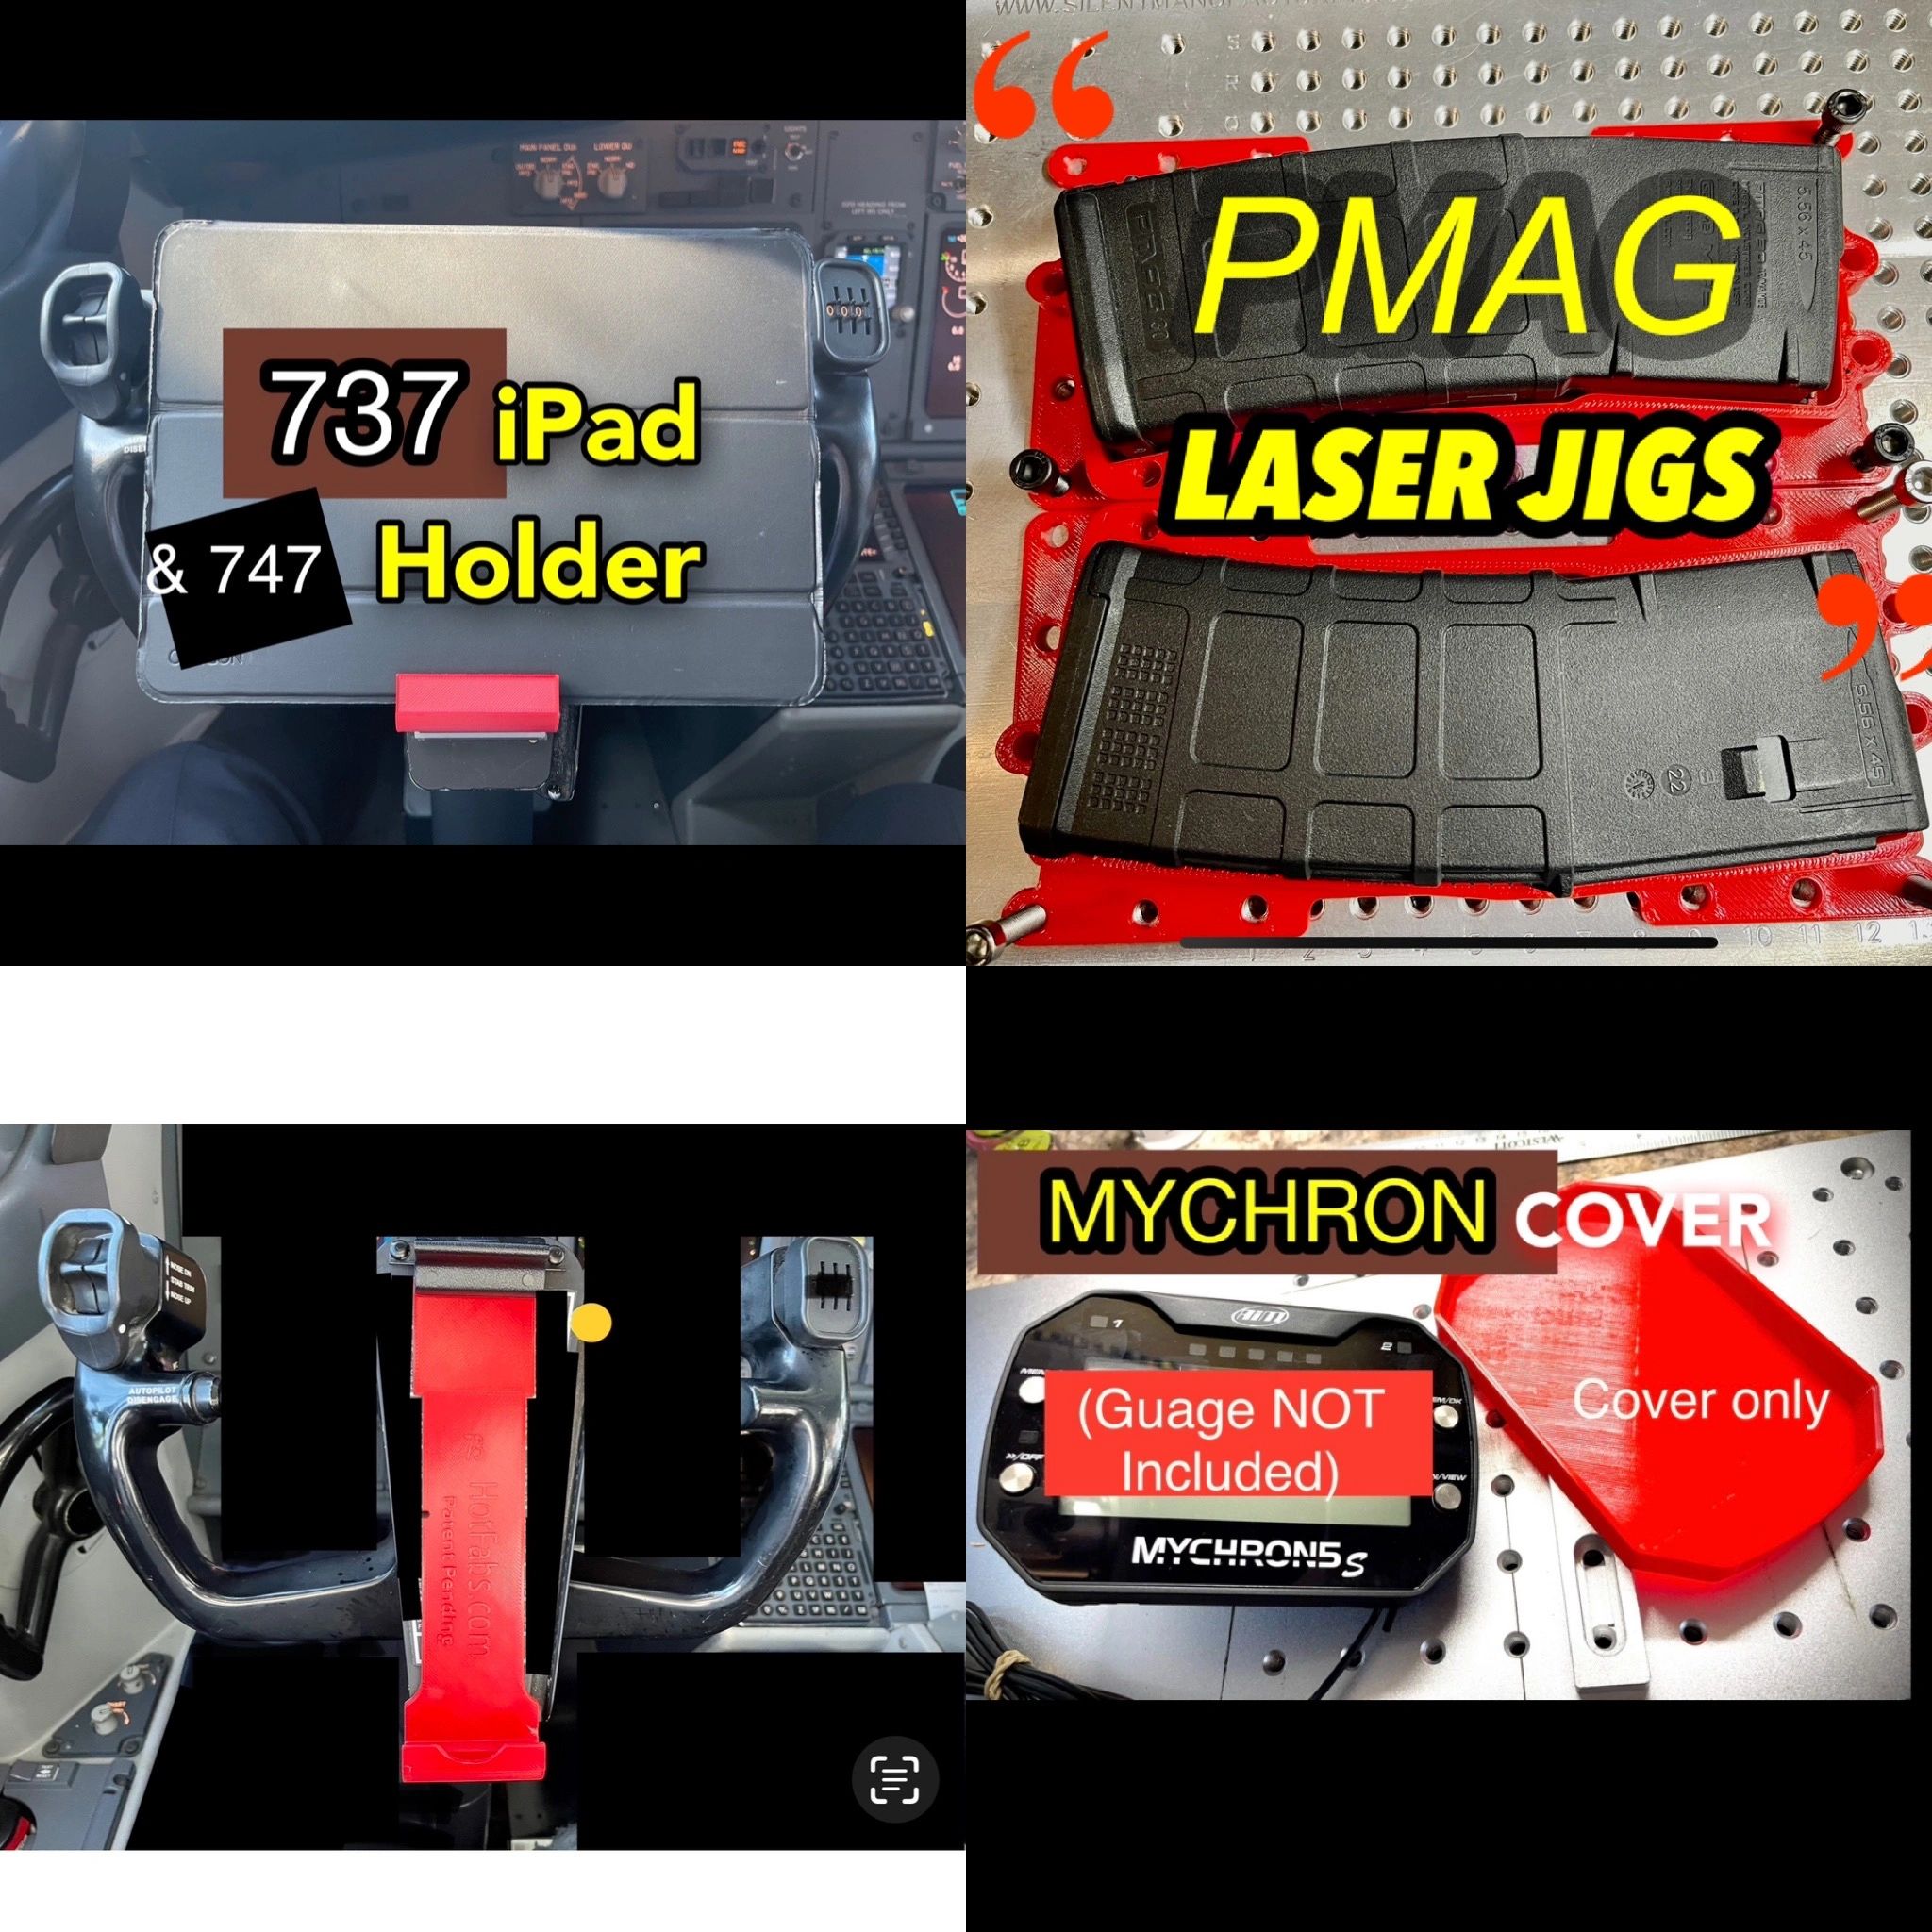 737 ipad holder, PMAG Laser Jig, Mychron Cover, Coin Jigs